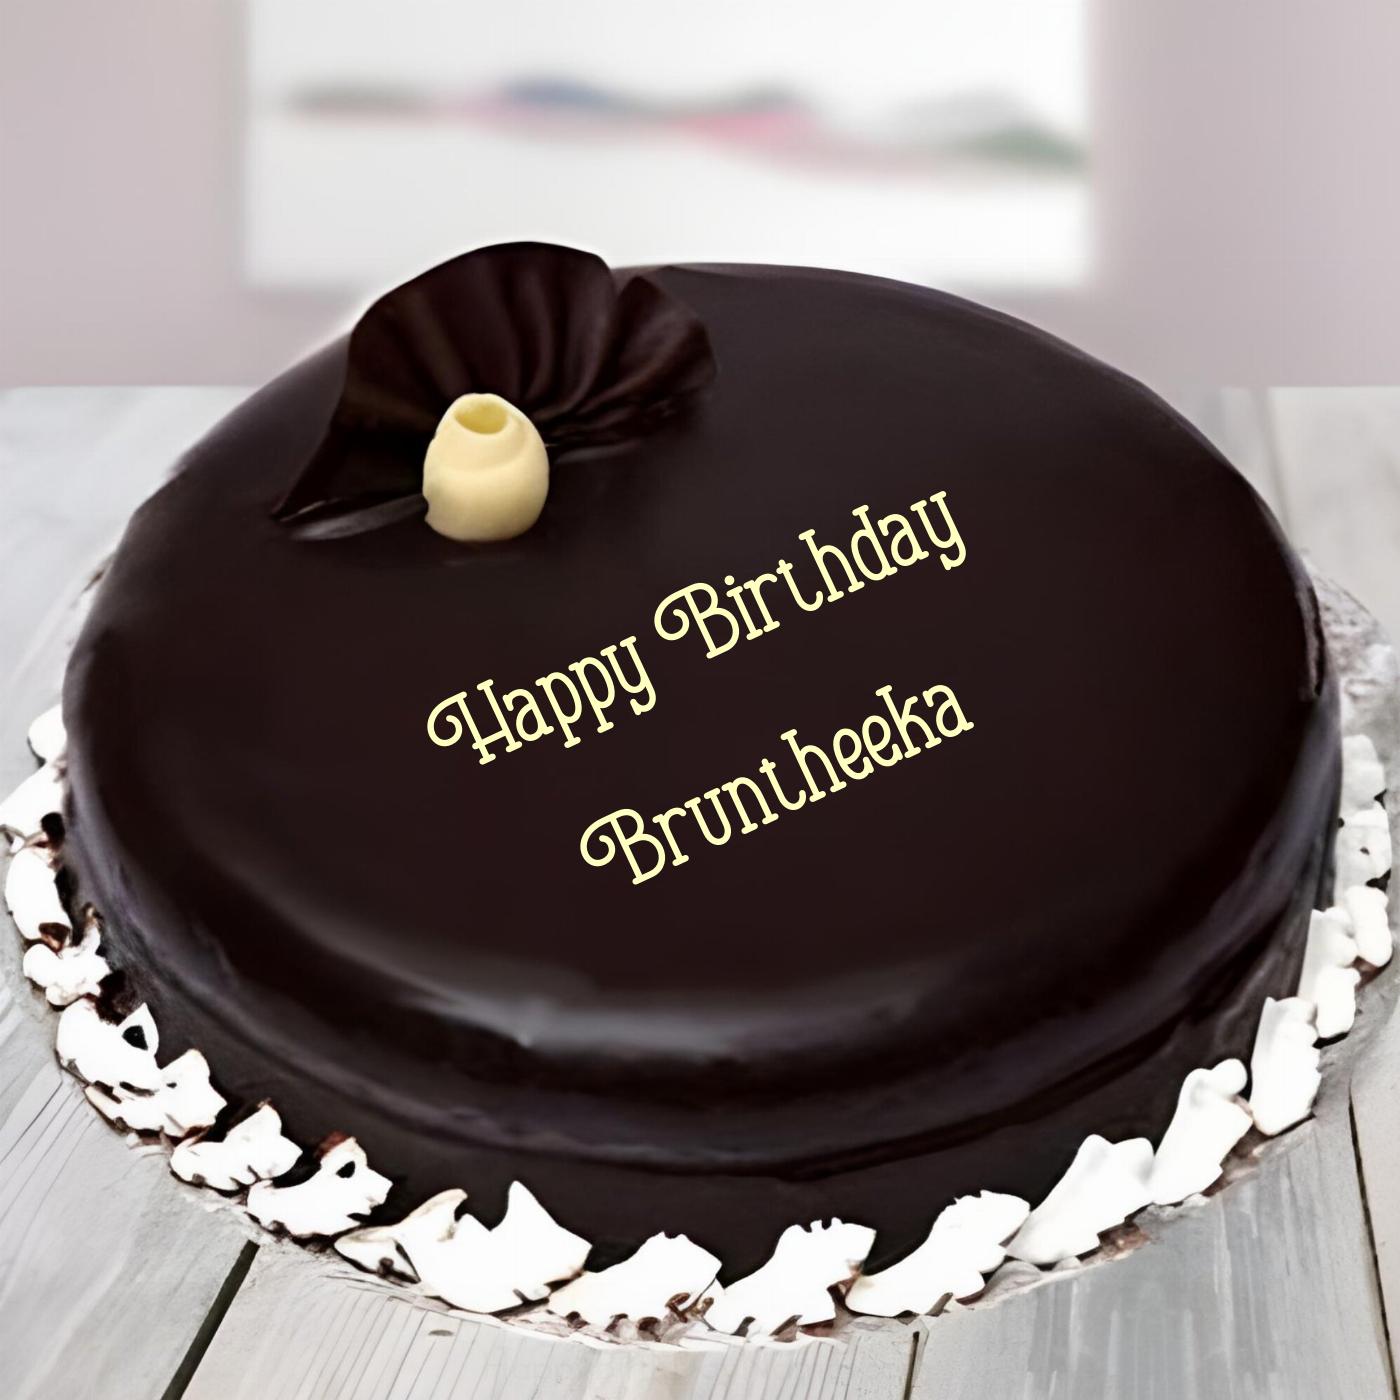 Happy Birthday Bruntheeka Beautiful Chocolate Cake